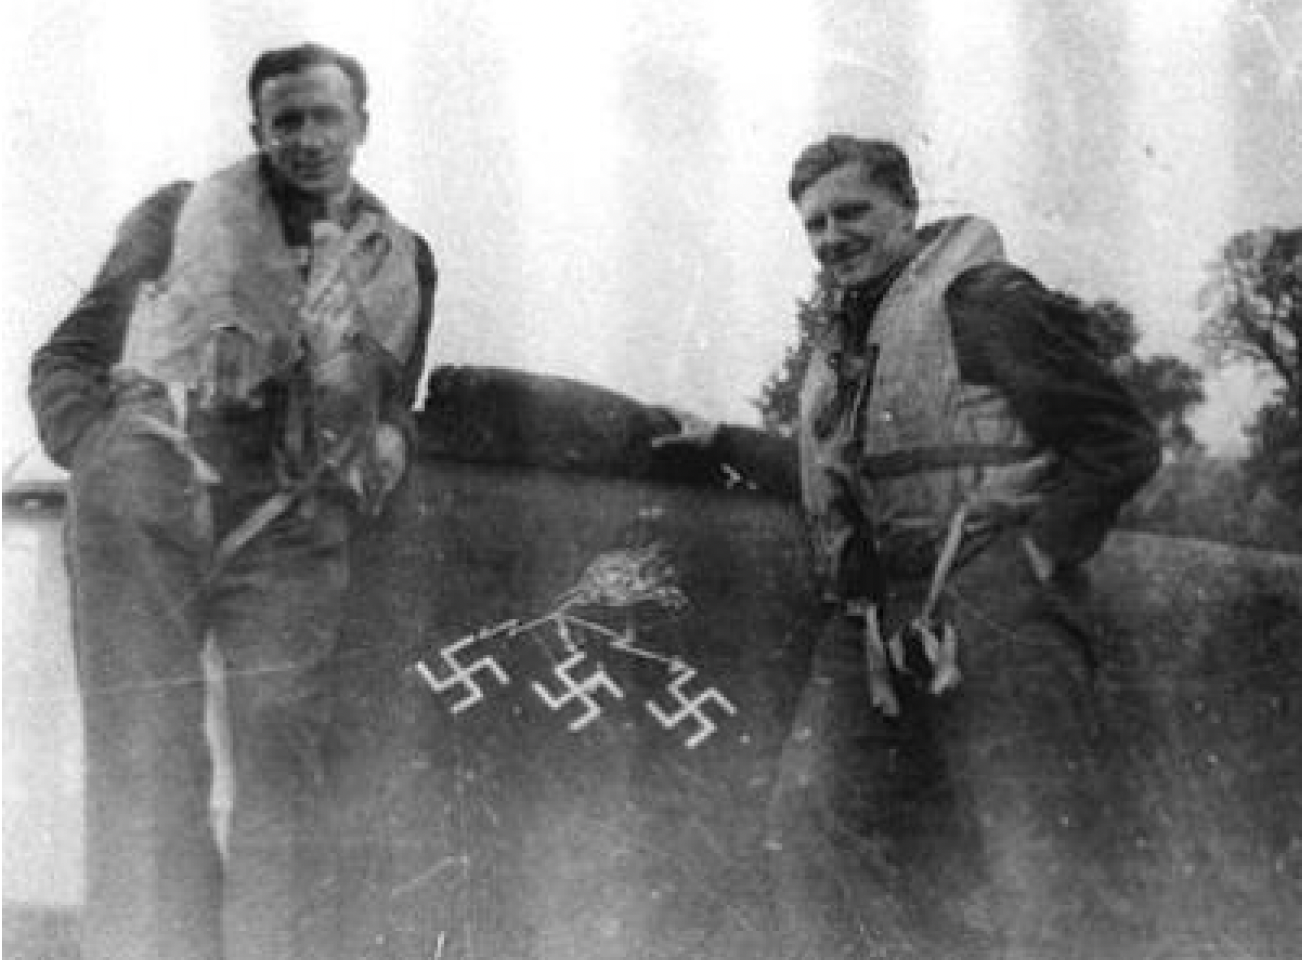 Zbyszko Lissowski and Illaswiczpng